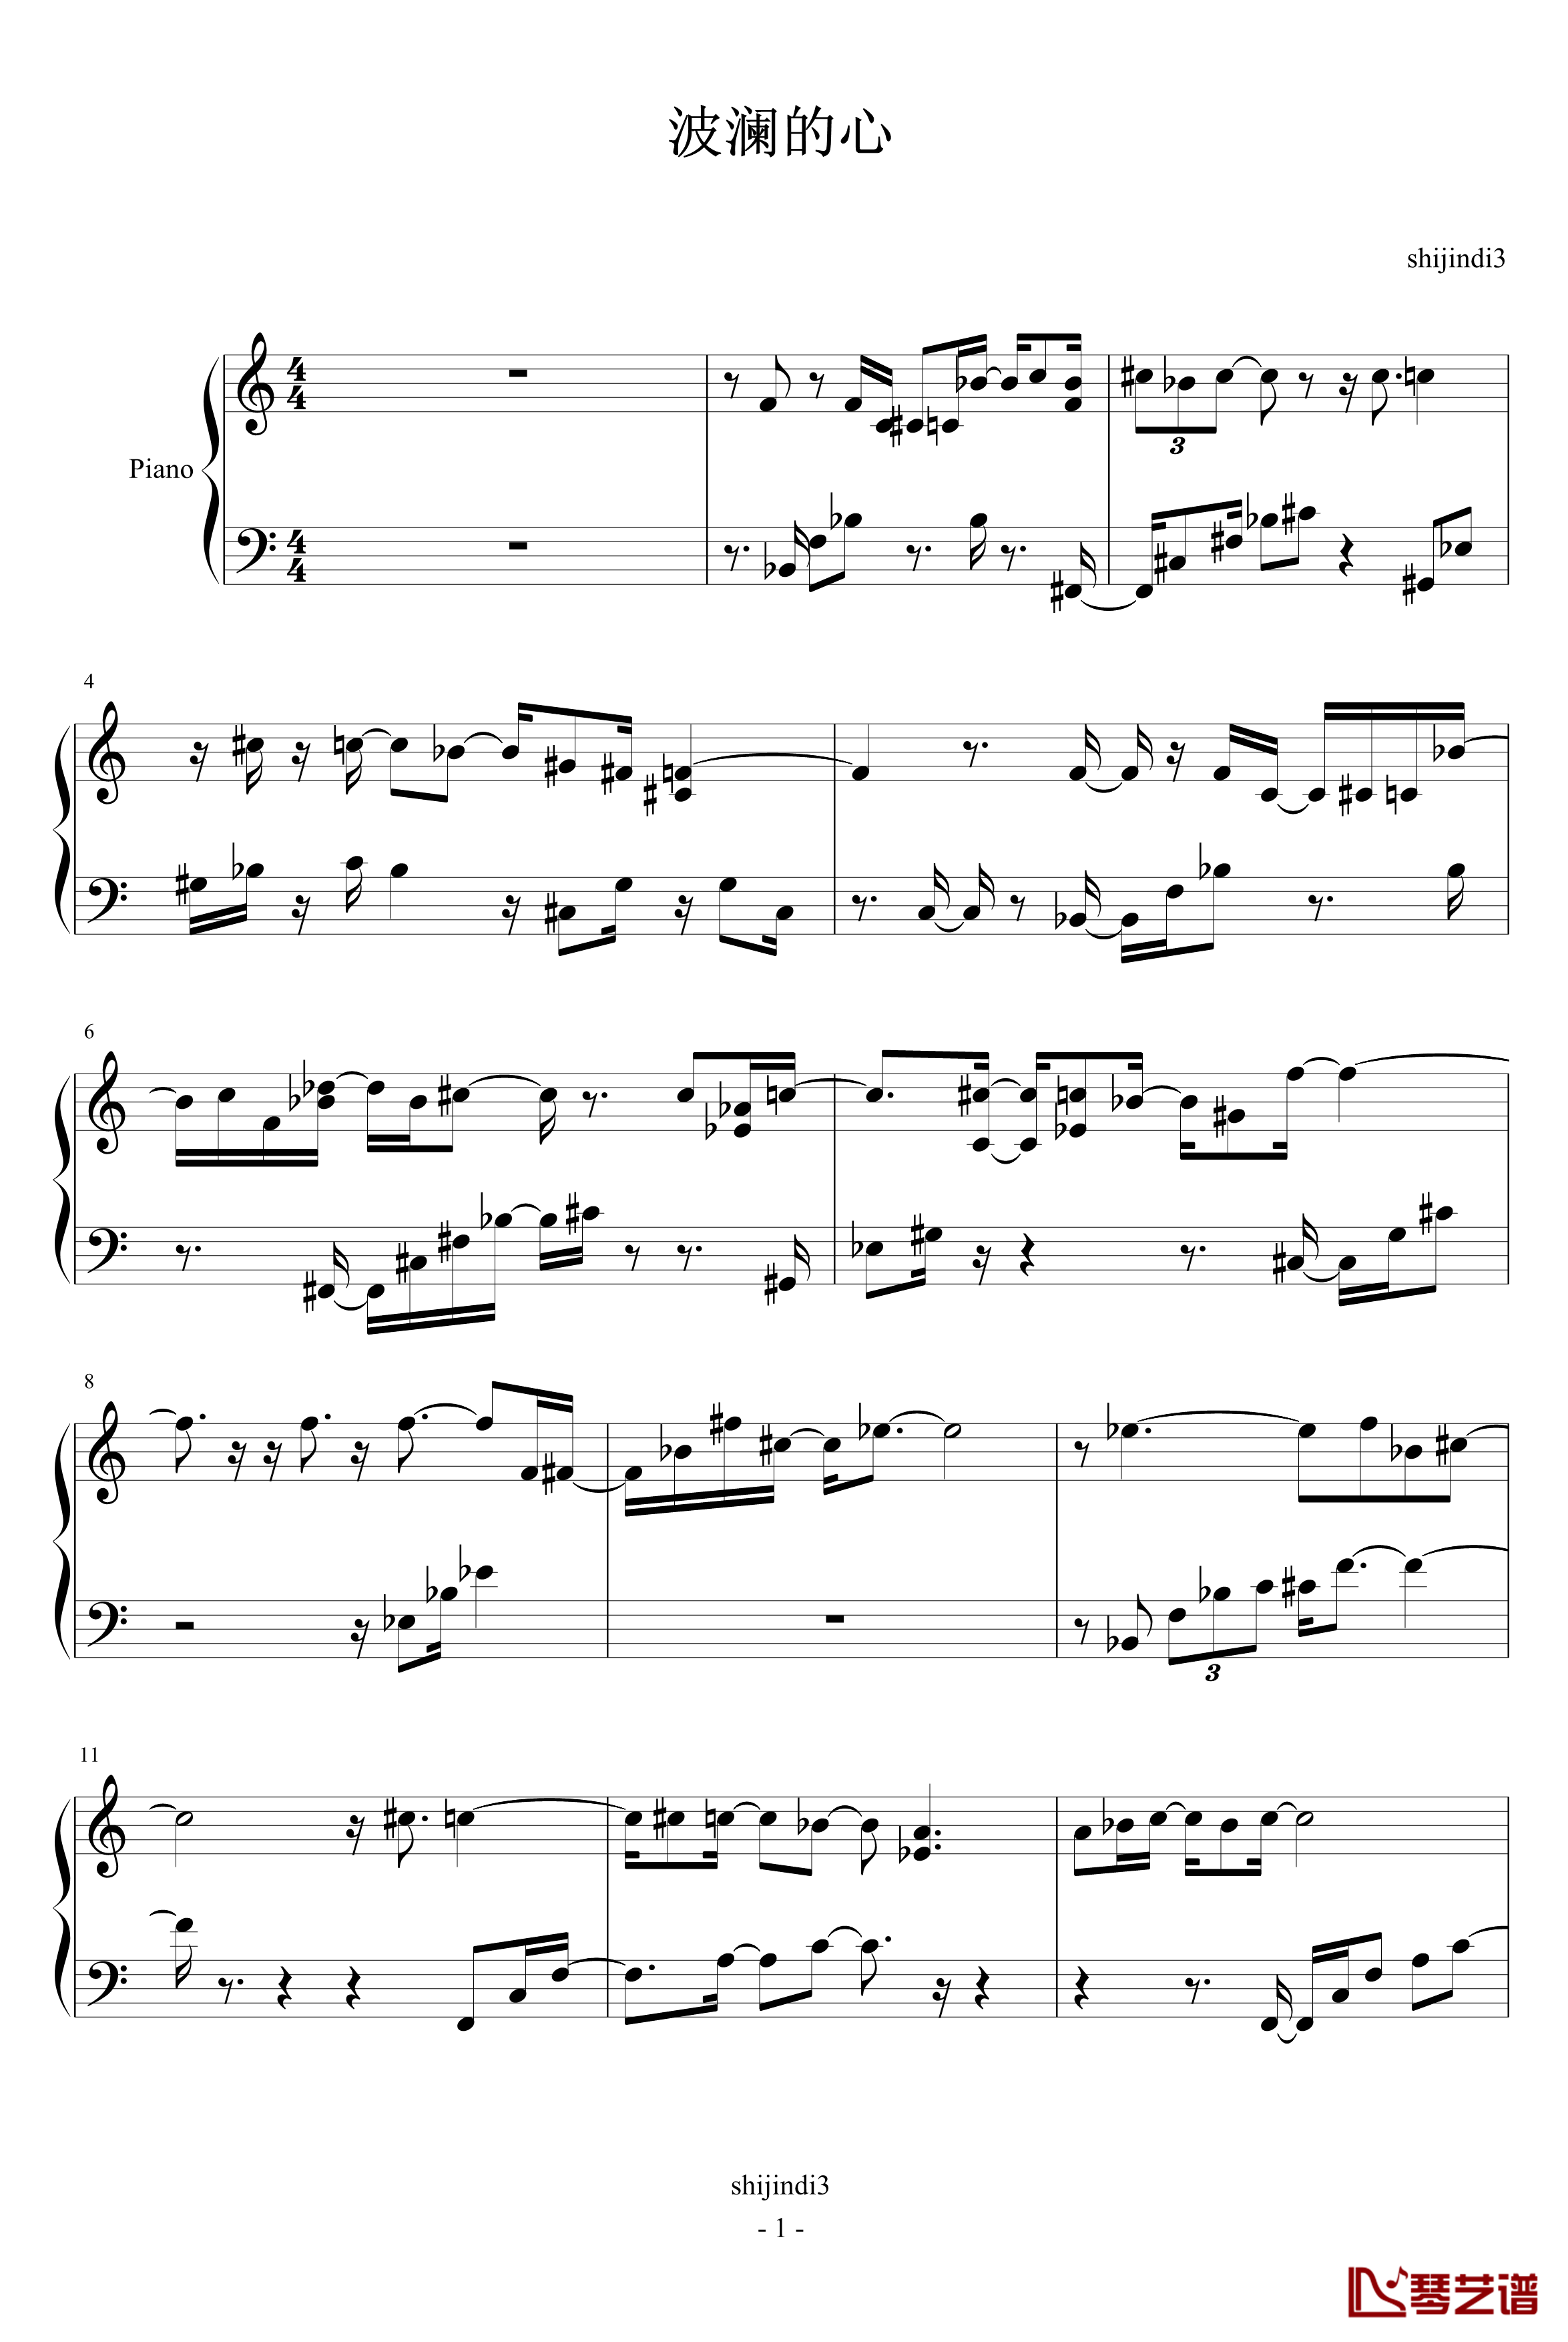 波澜的心钢琴谱-调整版-shijindi31